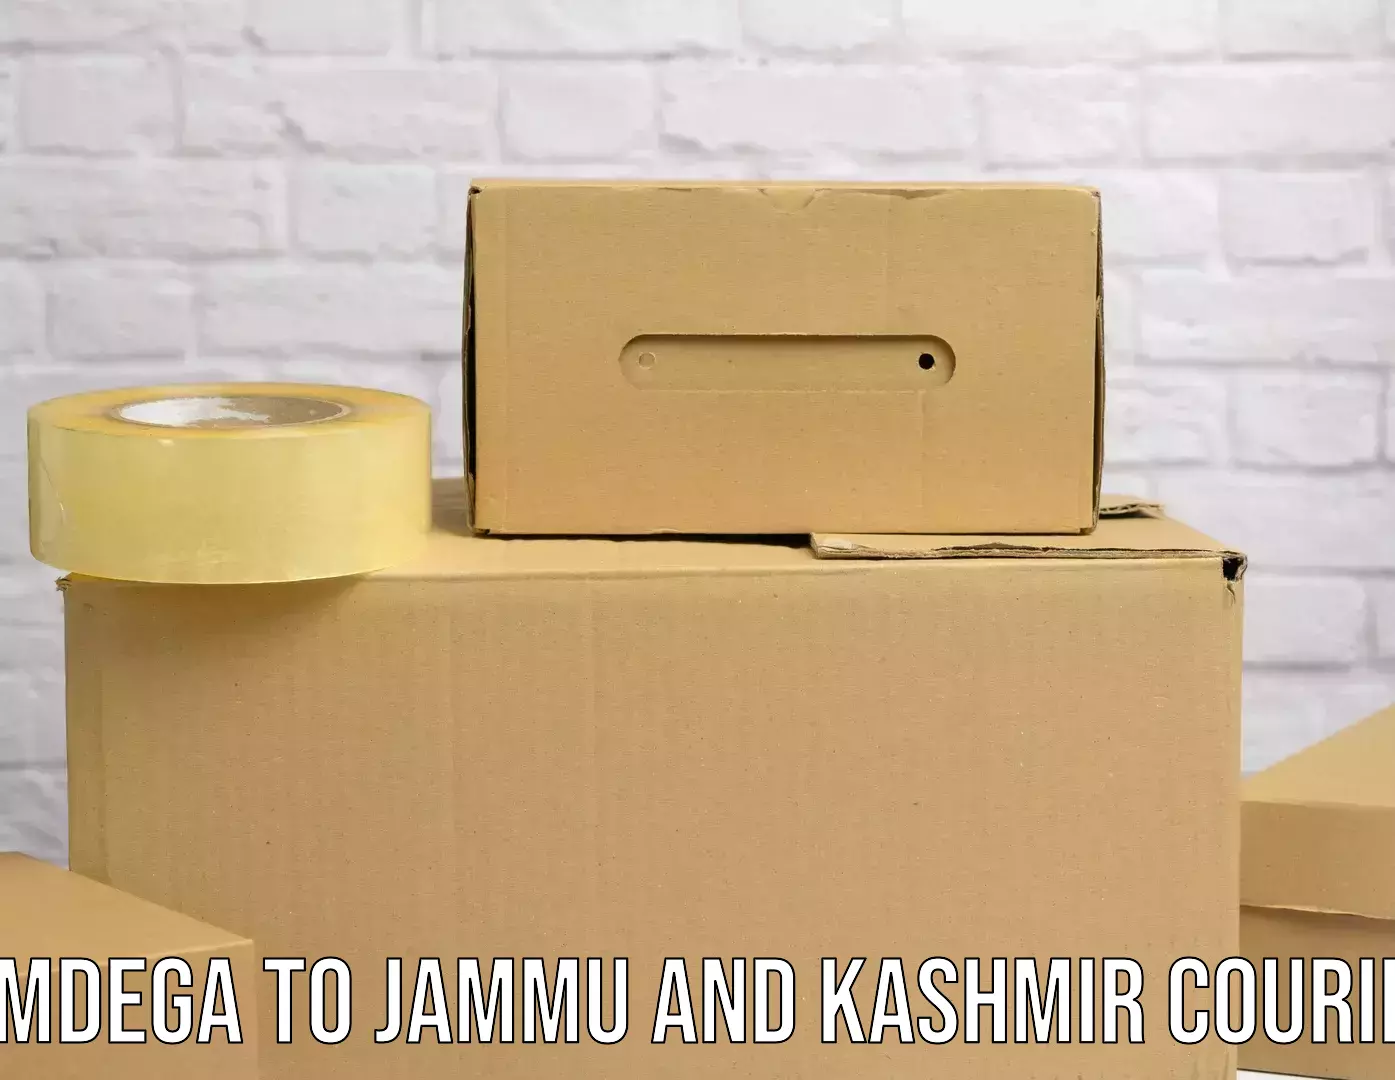 Quick dispatch service Simdega to Jammu and Kashmir